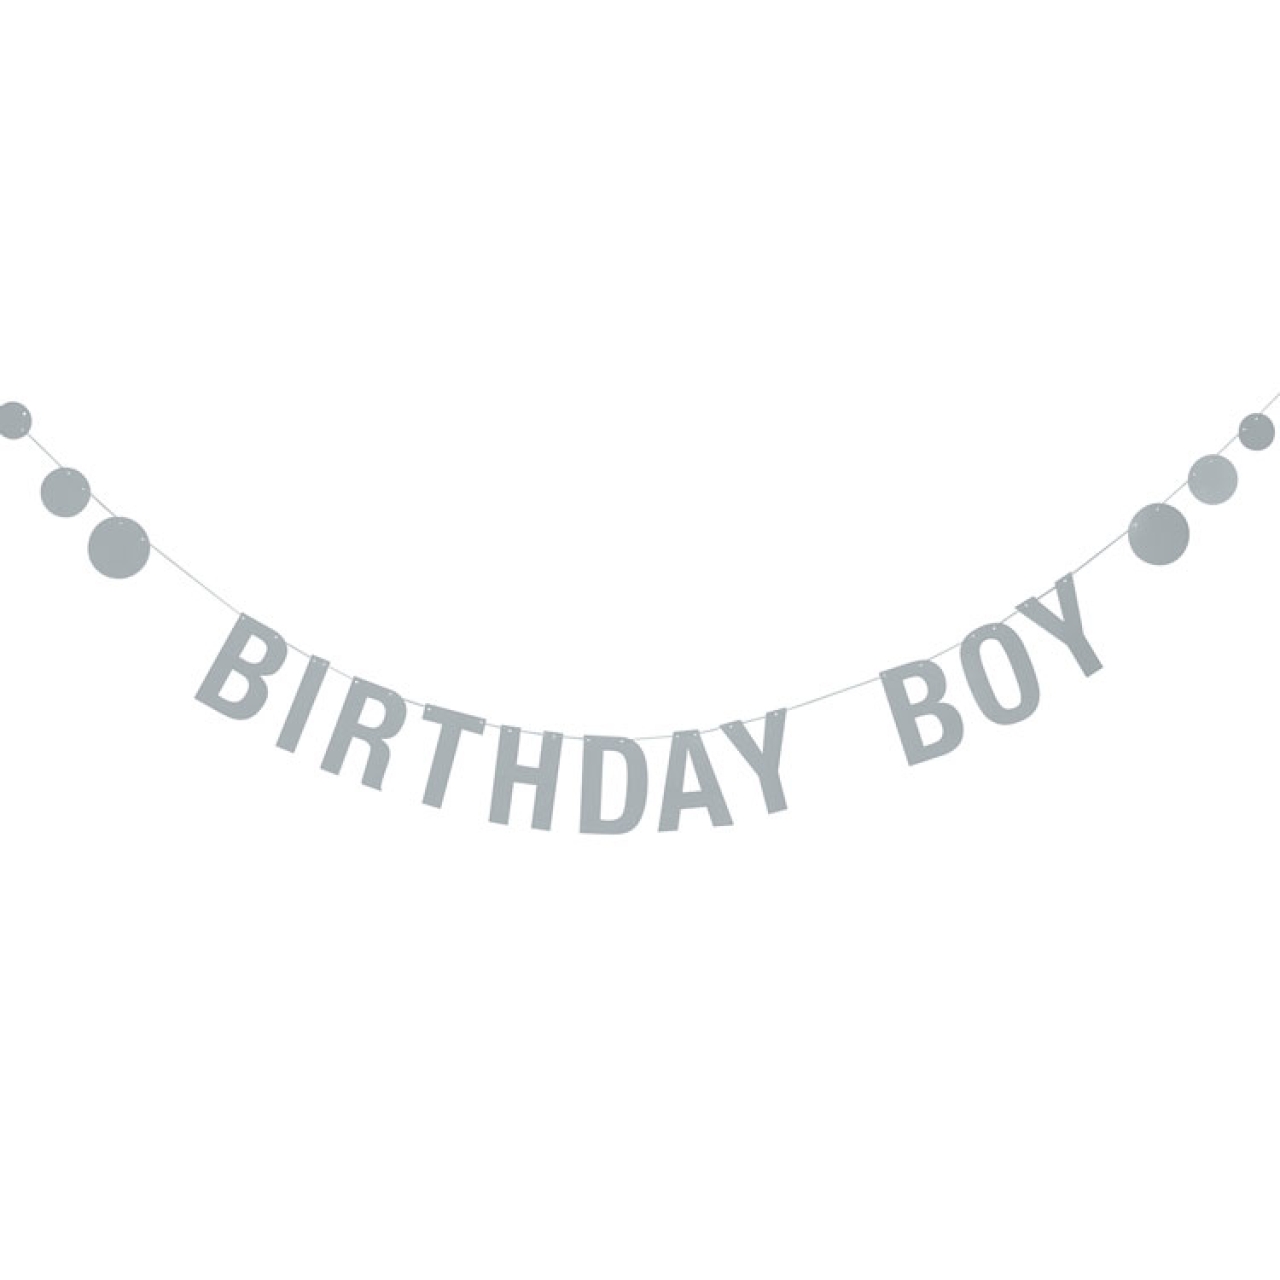 Partygirlande "Birthday Boy", Jungengeburtstag, 2,2 m x 12 cm